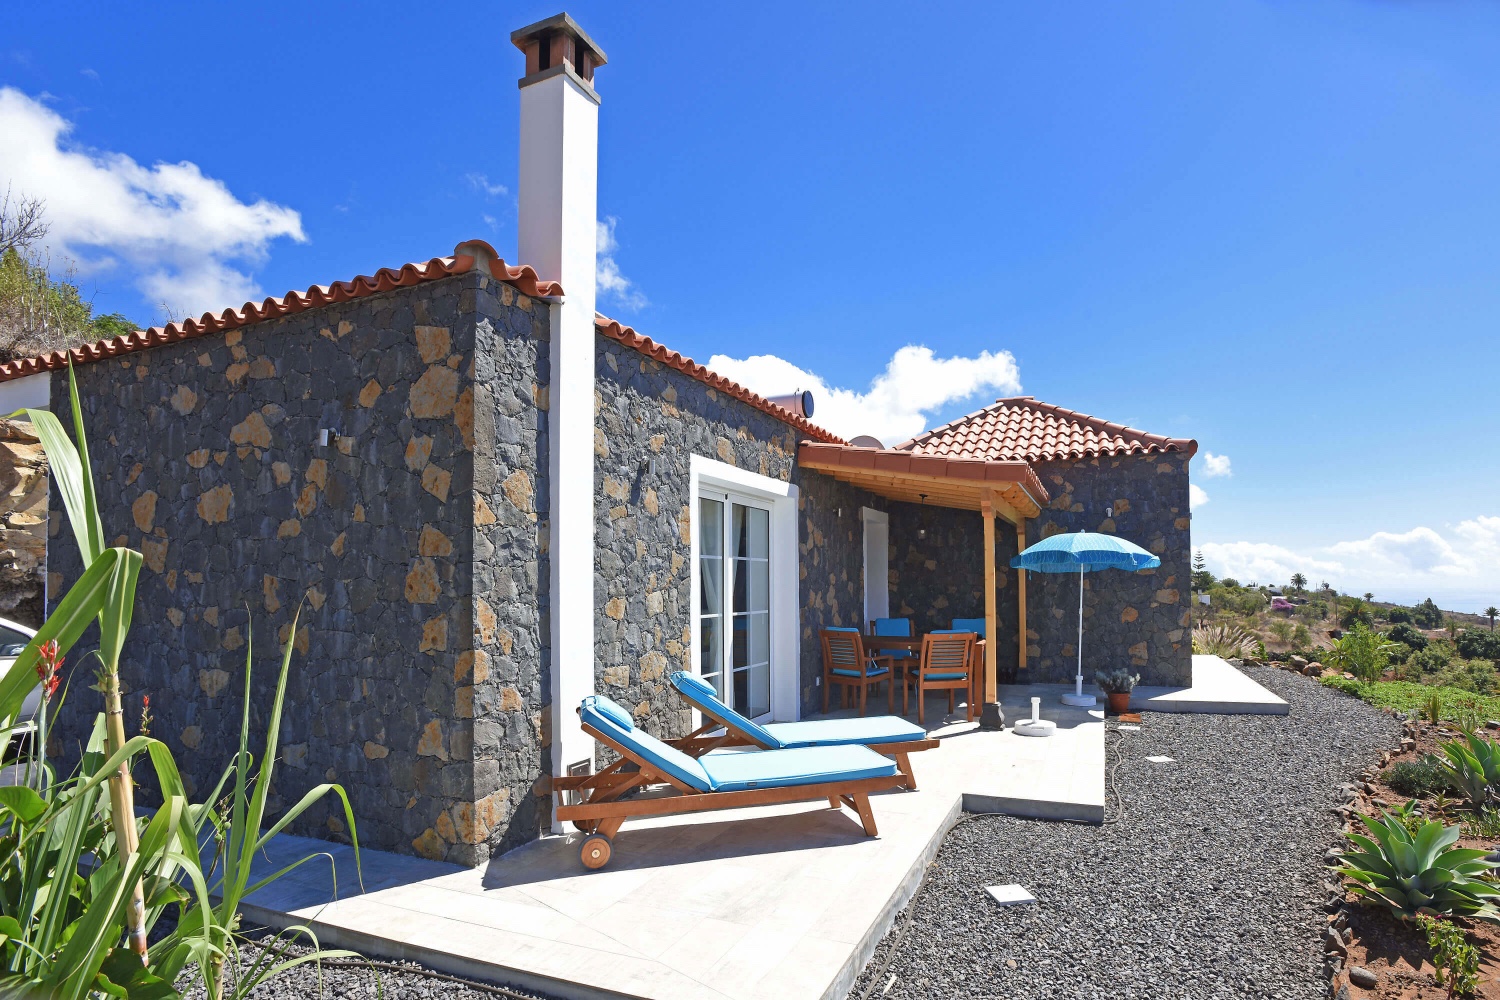 Neu gebautes, traditionelles Steinhaus mit allem Komfort eines modernen Designs und einem schönen Außenbereich, um den Meerblick zu genießen